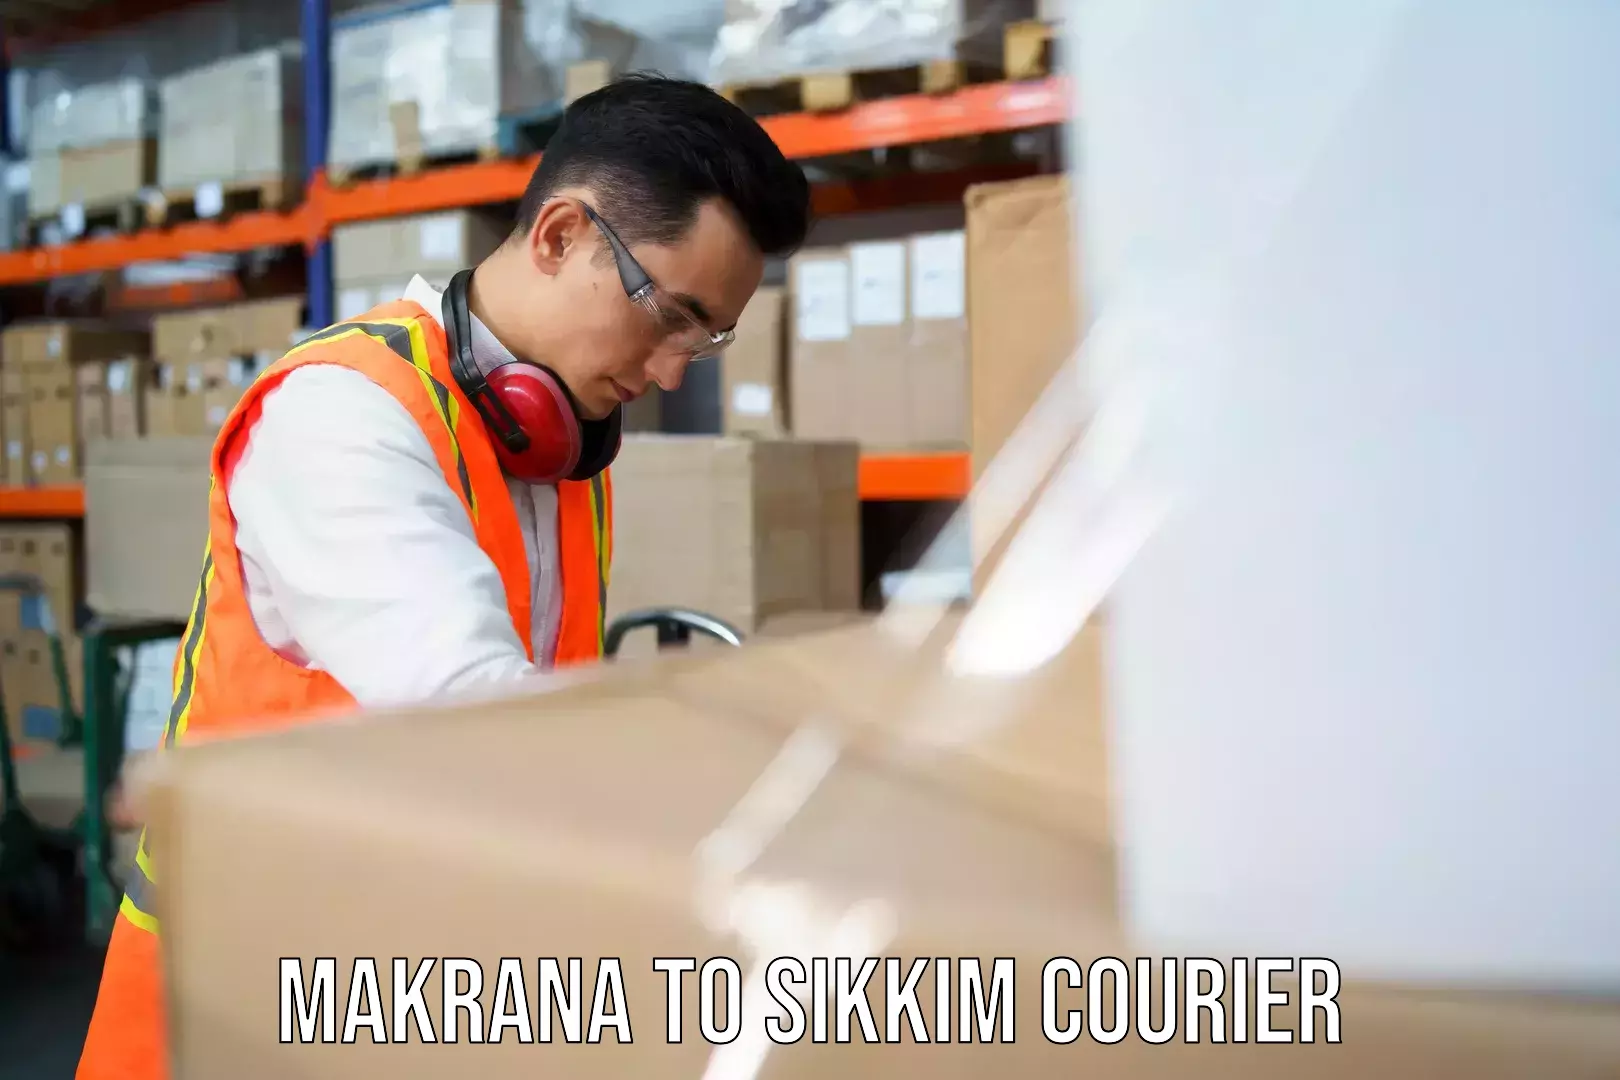 24/7 courier service Makrana to Singtam